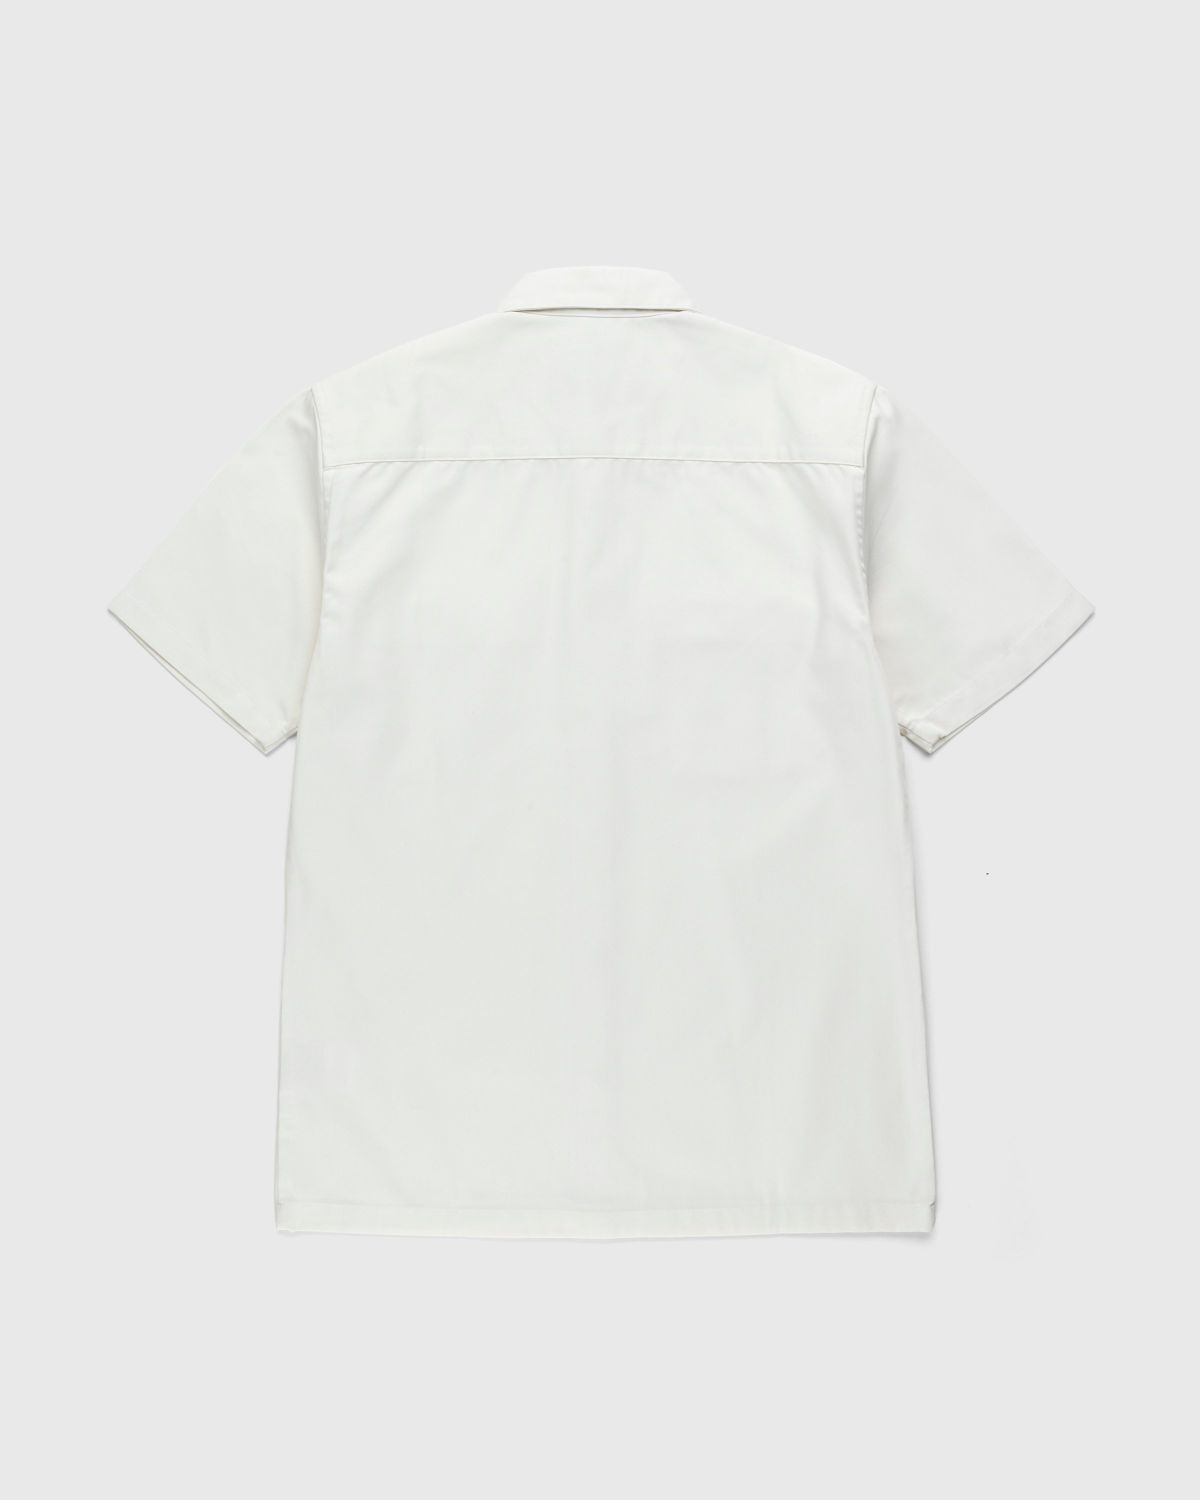 Carhartt WIP – Master Shirt Wax - Shirts - White - Image 2